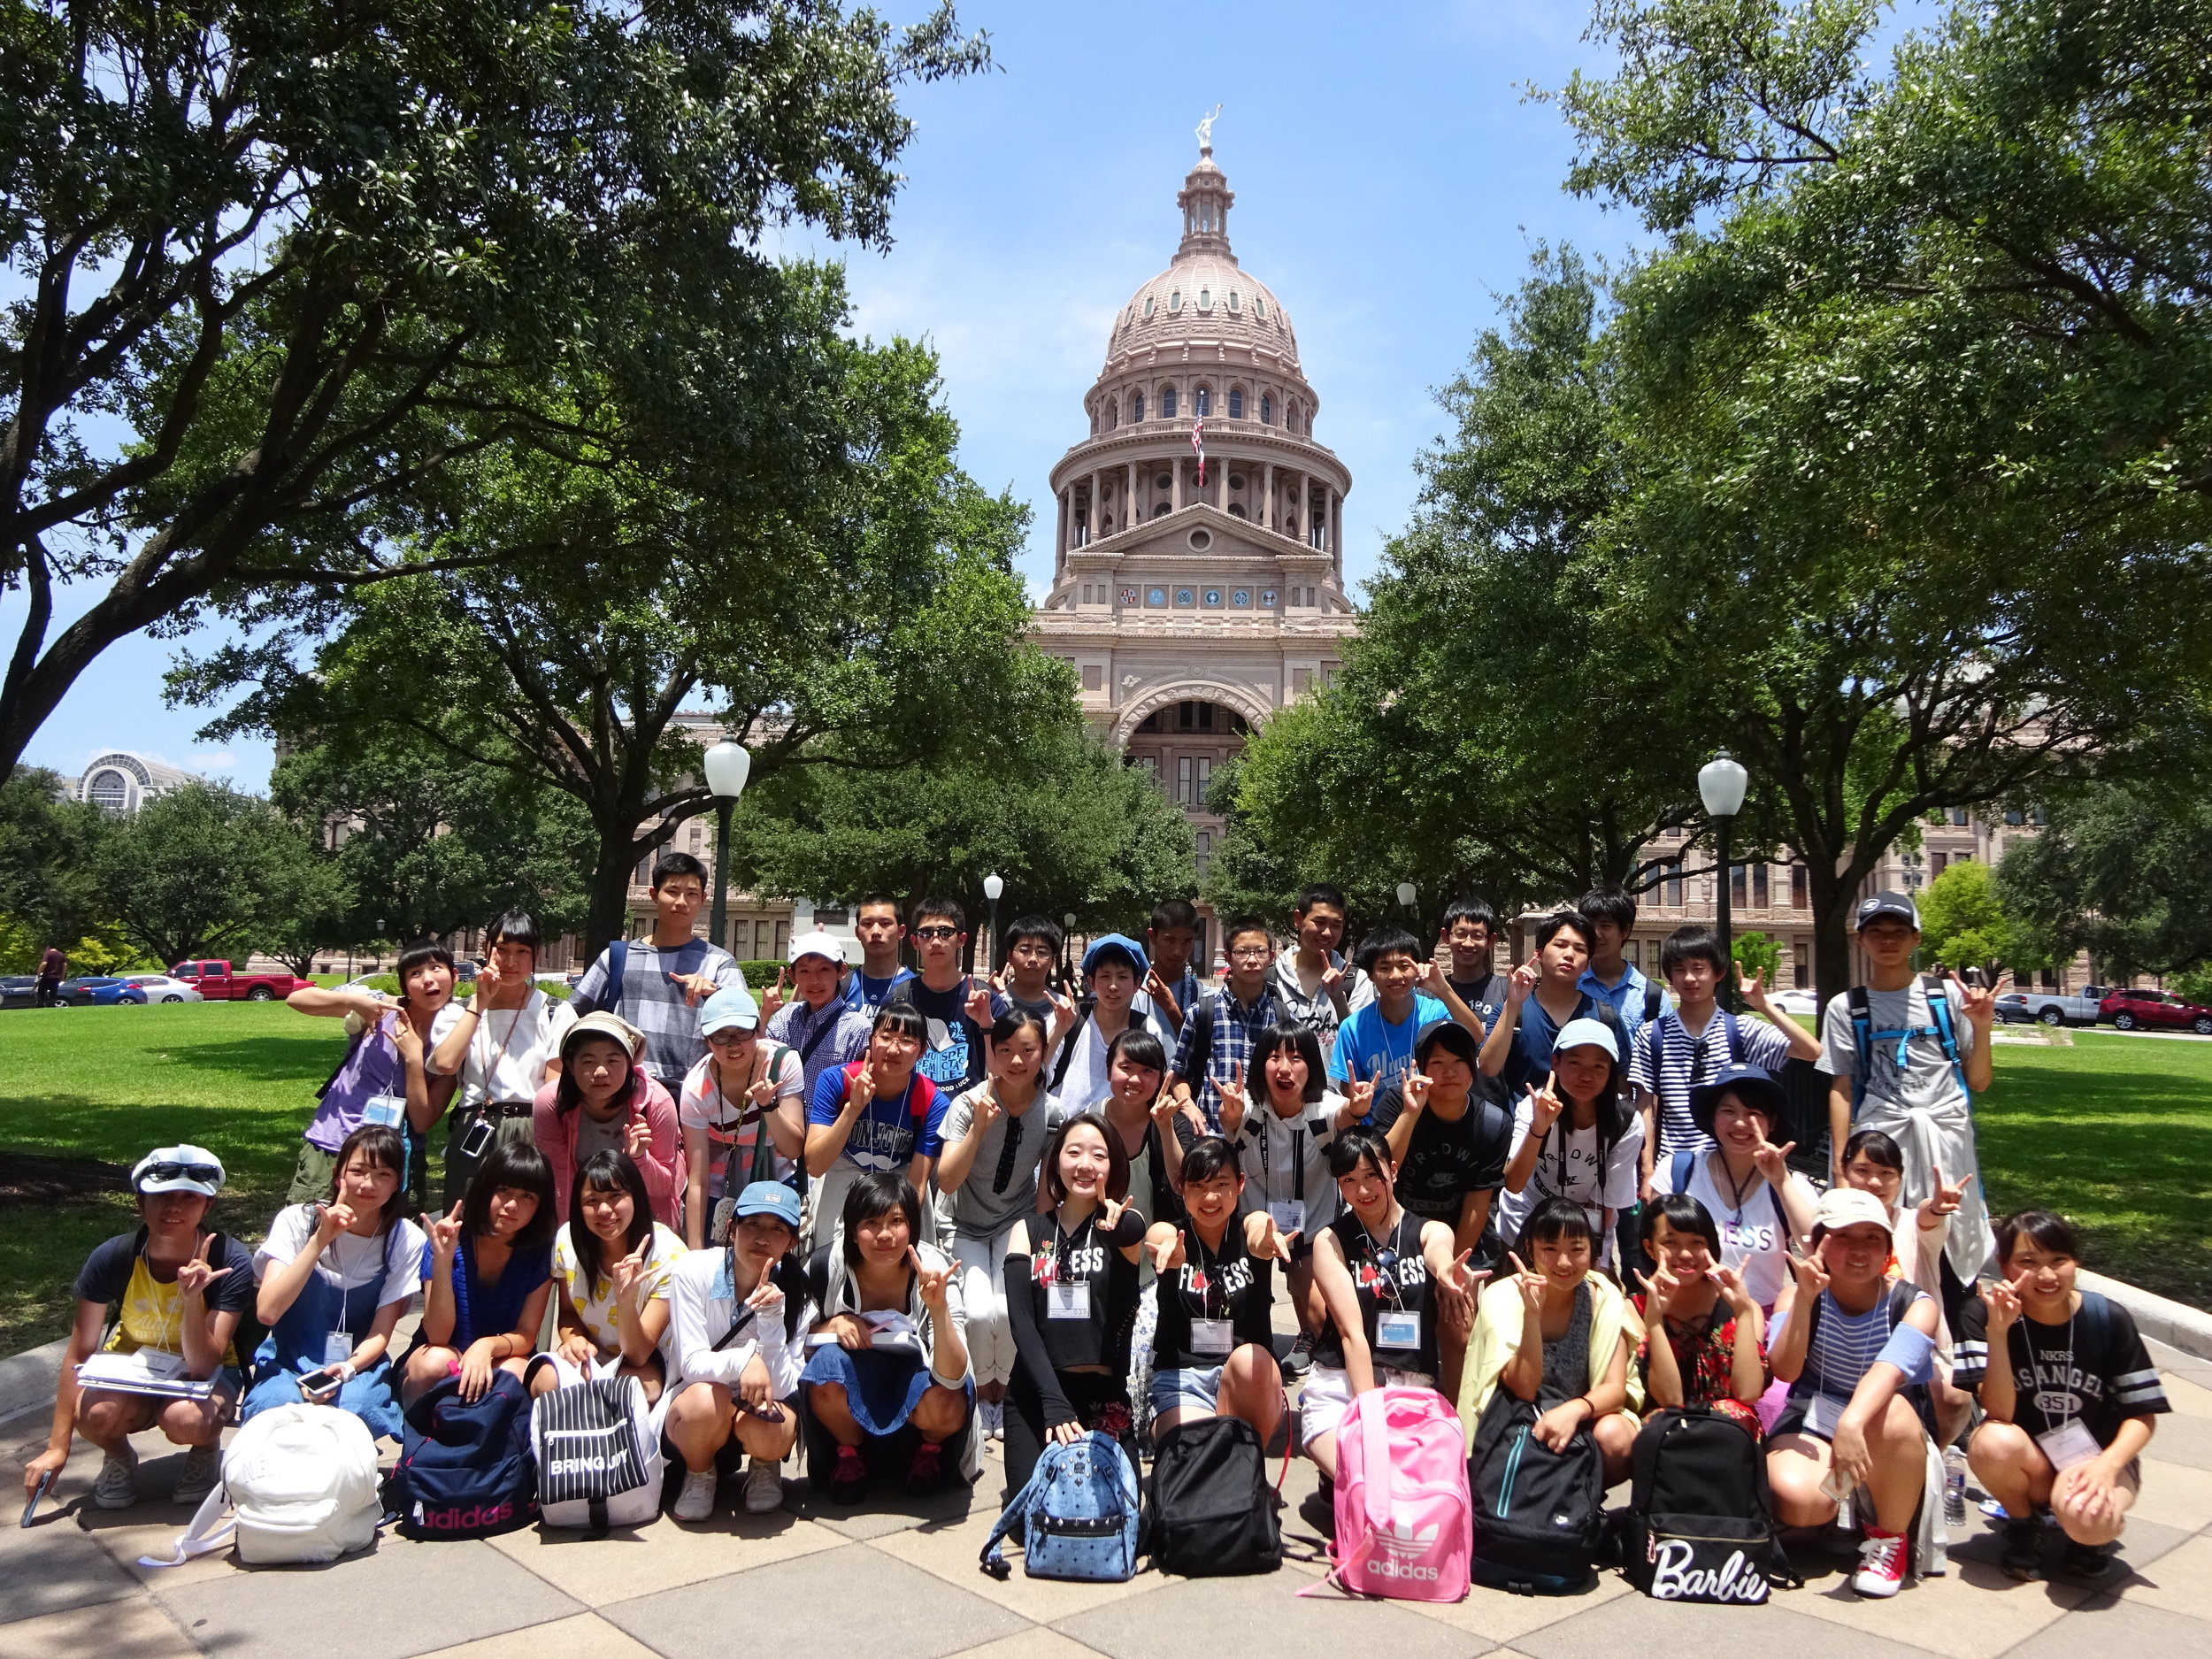 线上买球平台项目学生在德克萨斯州议会大厦的合影